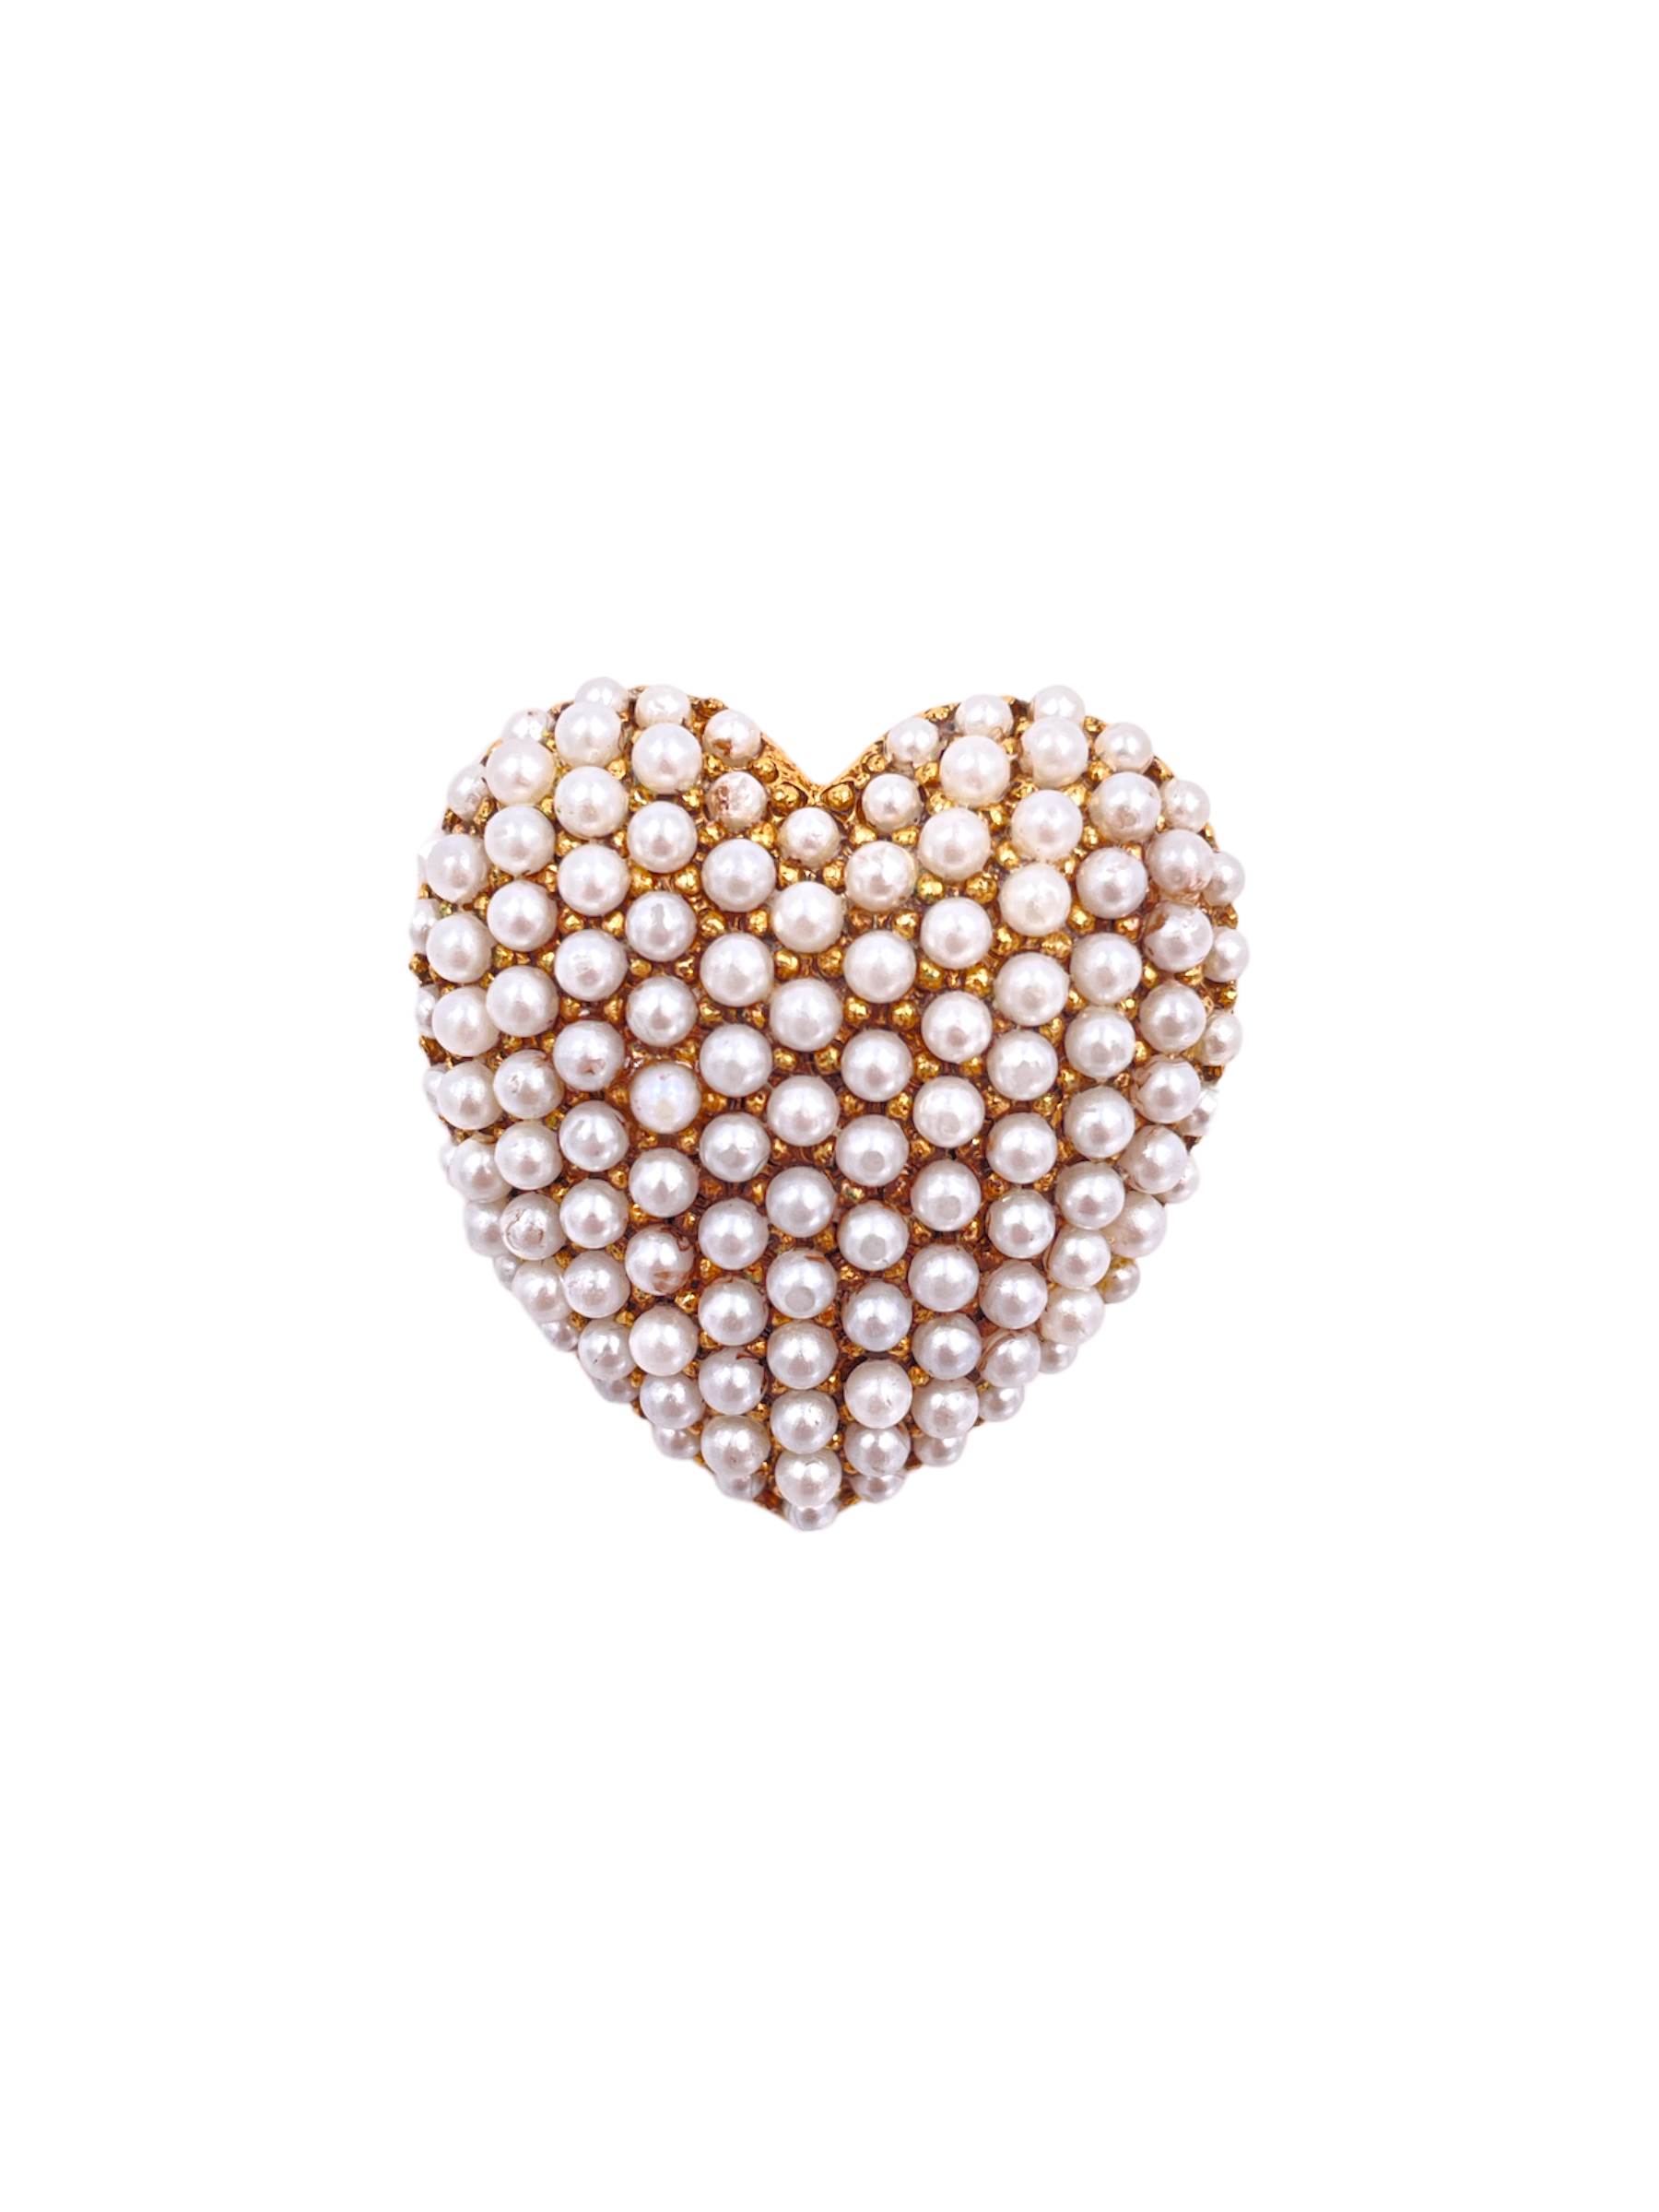 Weiss Pearl Heart Brooch